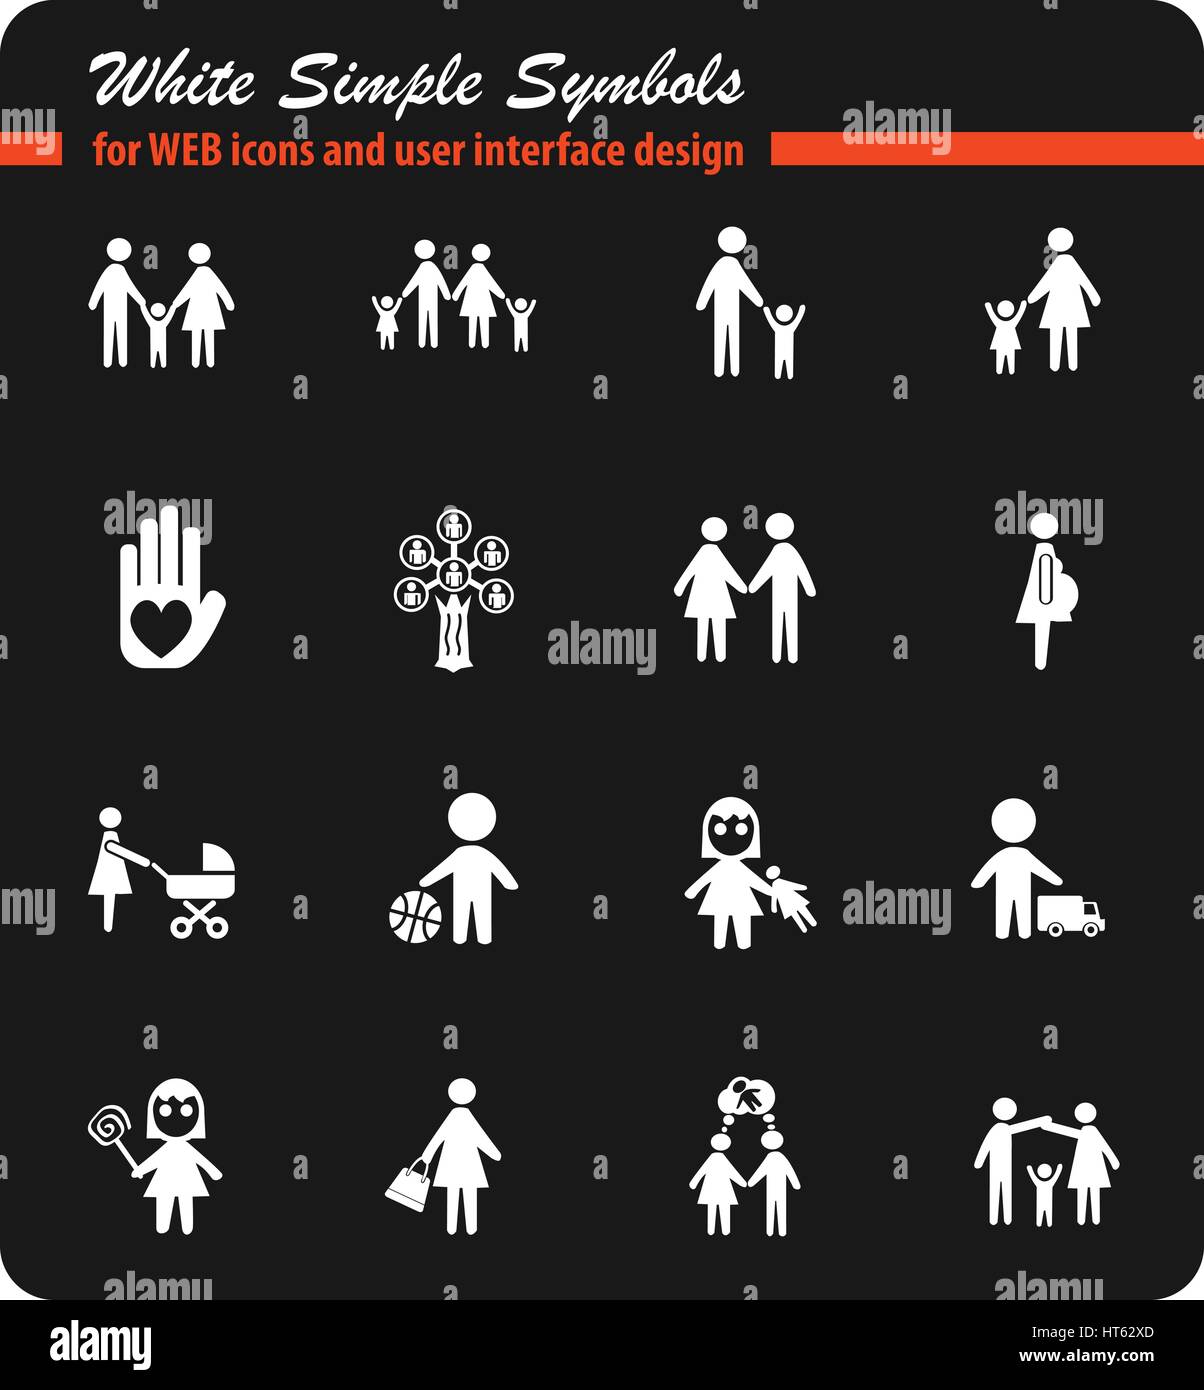 Site web de la famille des icônes pour la conception d'interface utilisateur Illustration de Vecteur